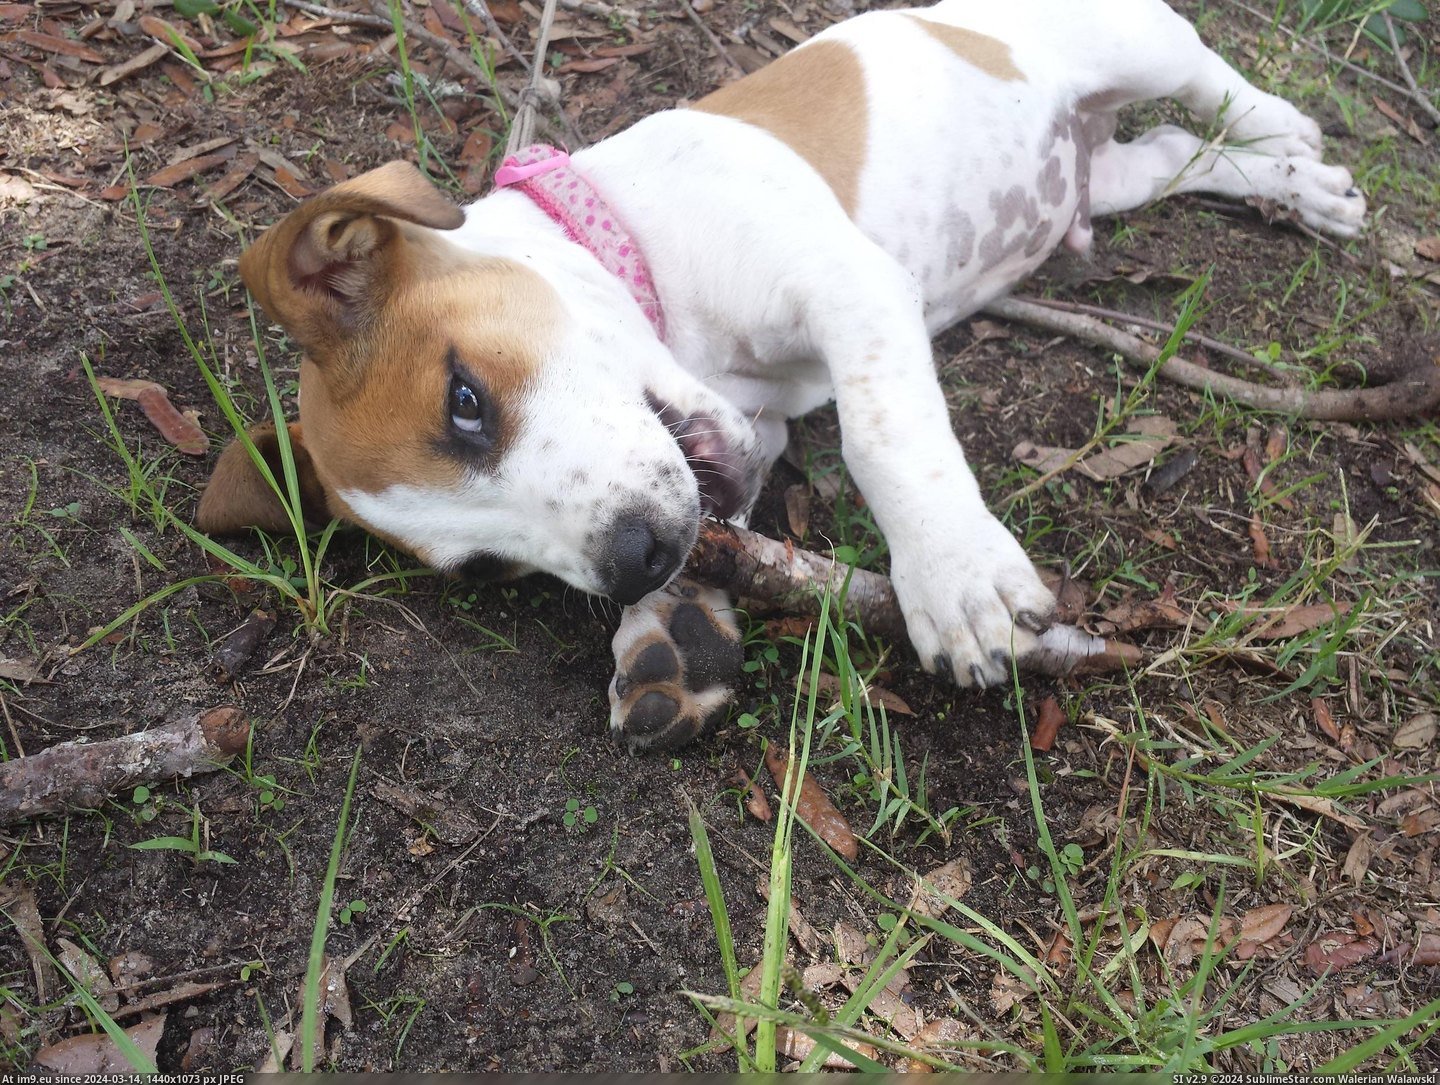 #Update #Puppy #Site #Pedro #Drill #Weeks [Aww] Update: Pedro the drill site puppy, three weeks later Pic. (Bild von album My r/AWW favs))